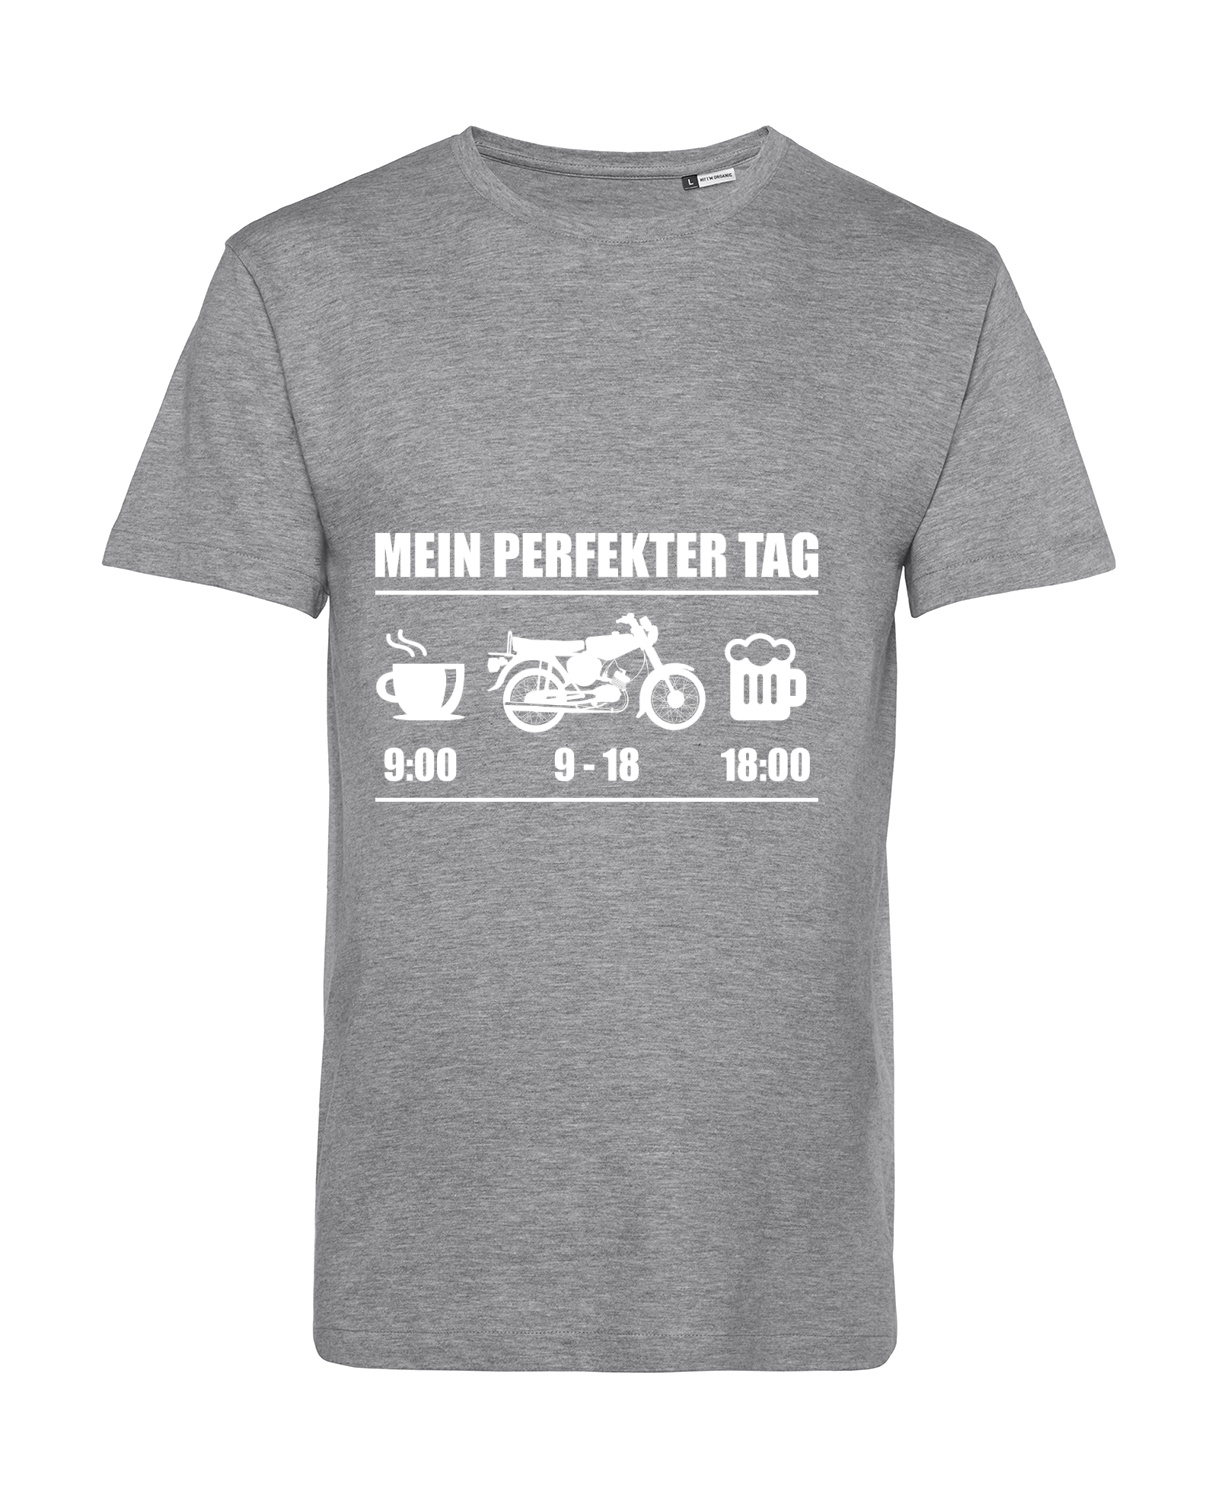 Nachhaltiges T-Shirt Herren 2Takter - Mein perfekter Tag S50